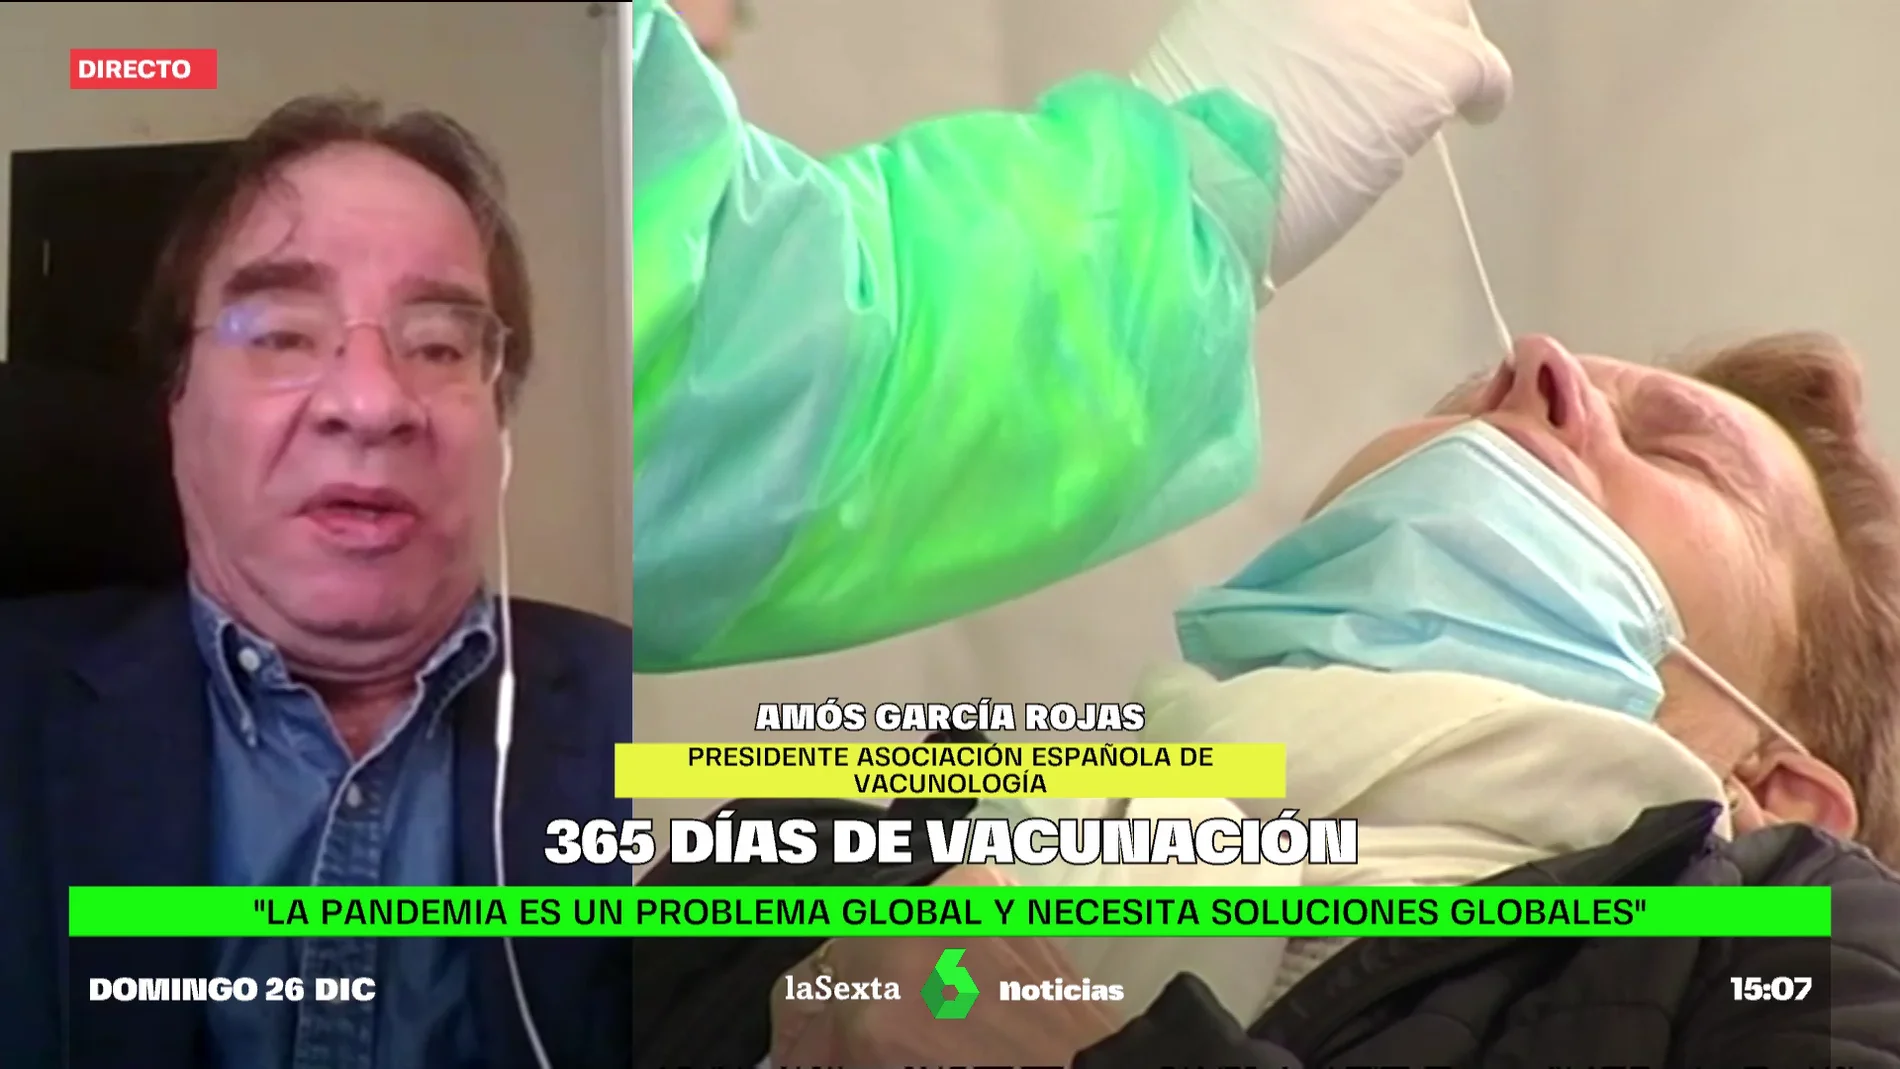 El vacunólogo Amós García Rojas pone fecha al pico de la sexta ola del COVID-19: "A finales de enero disminuirán los casos"